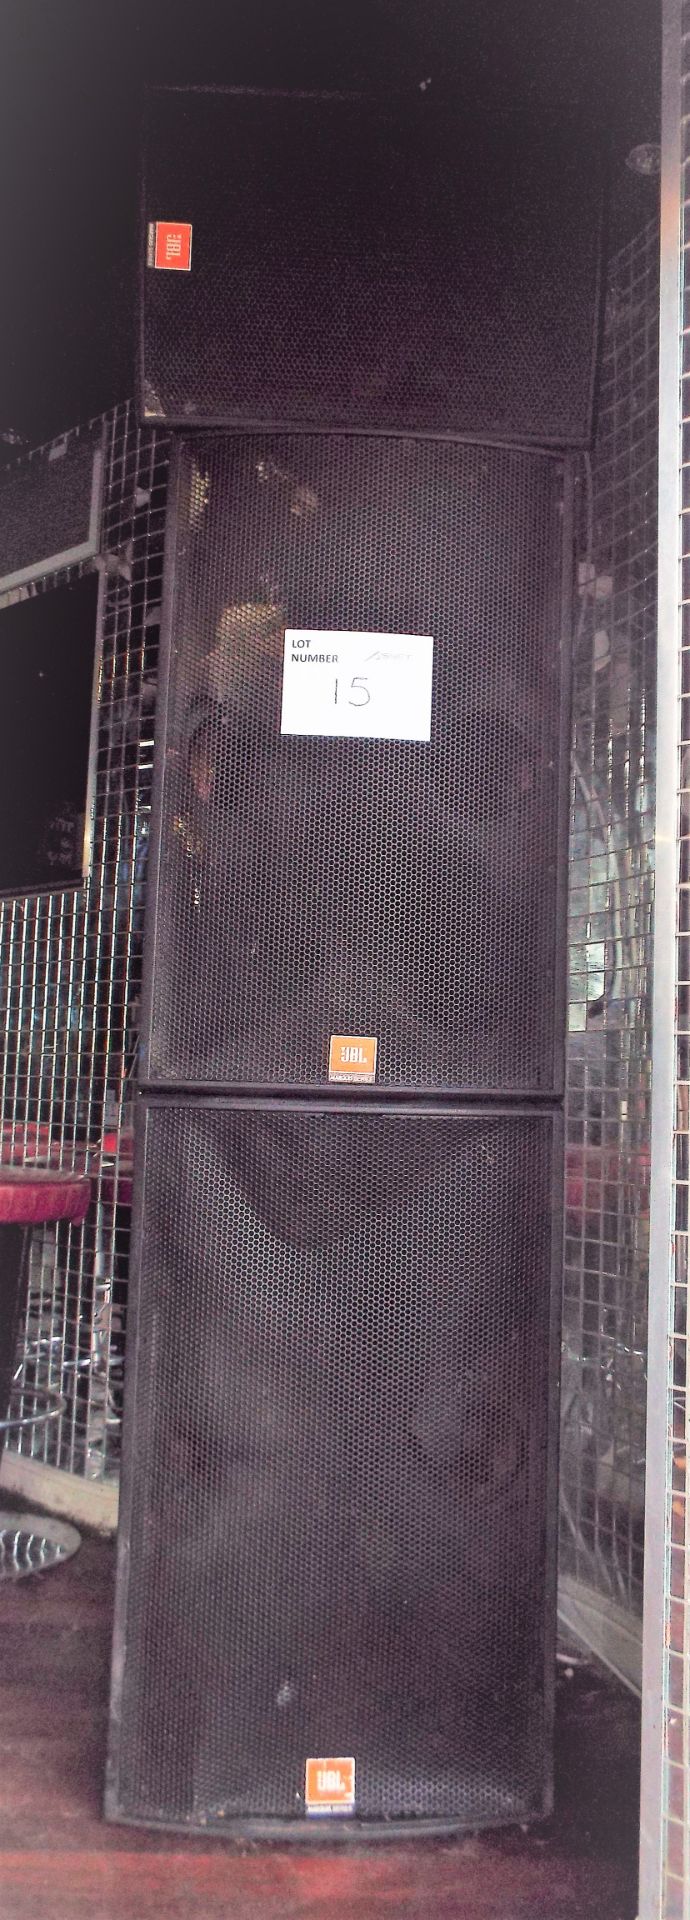 JBL Marquis Series Speaker Stack